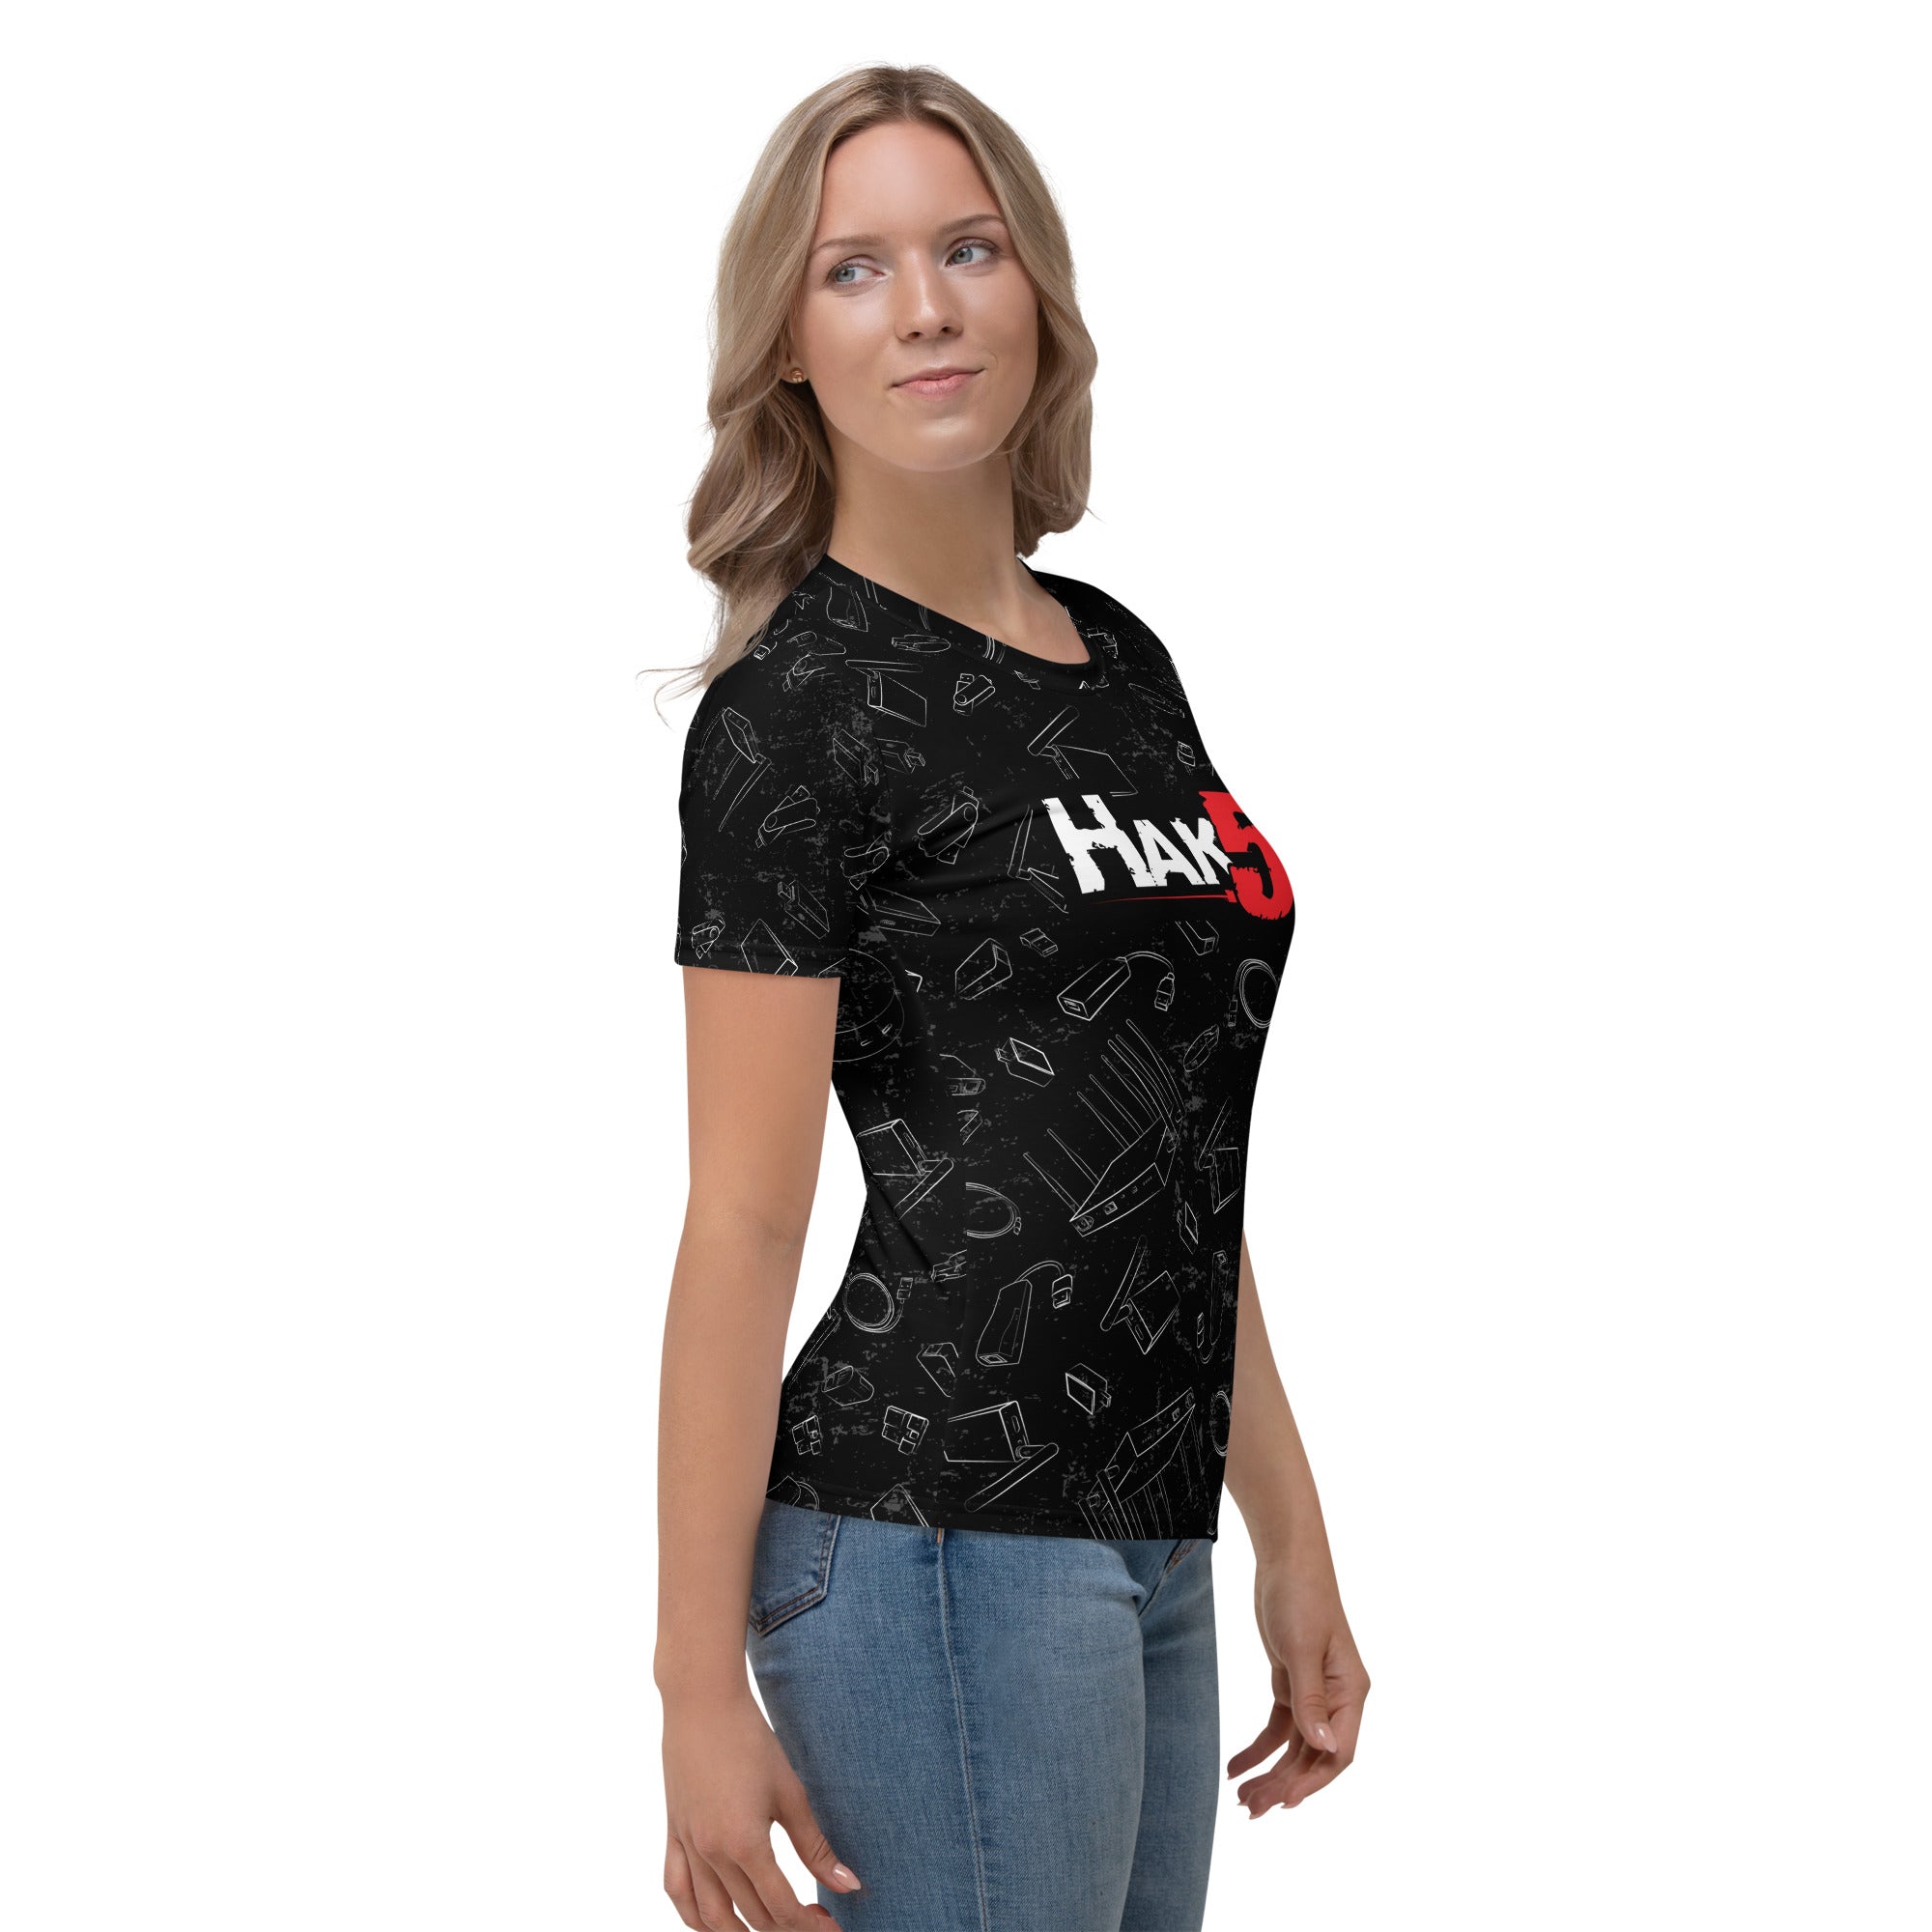 2022 Hak5 Gear Women's T-shirt